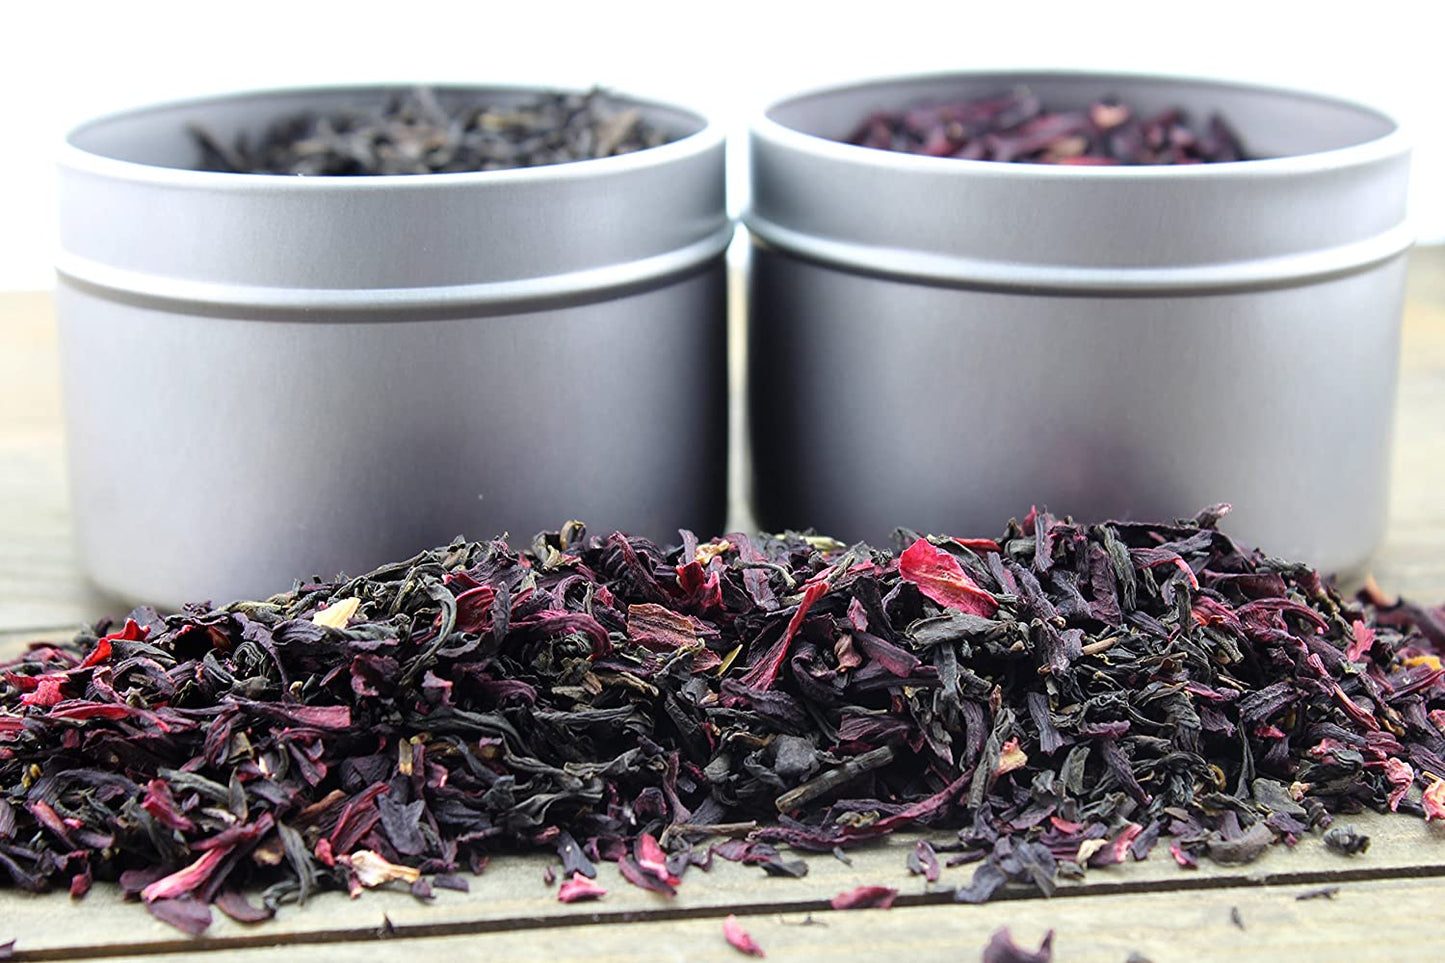 Loose Leaf Tea Sampler Gift Set Create Your Own Tea Blend